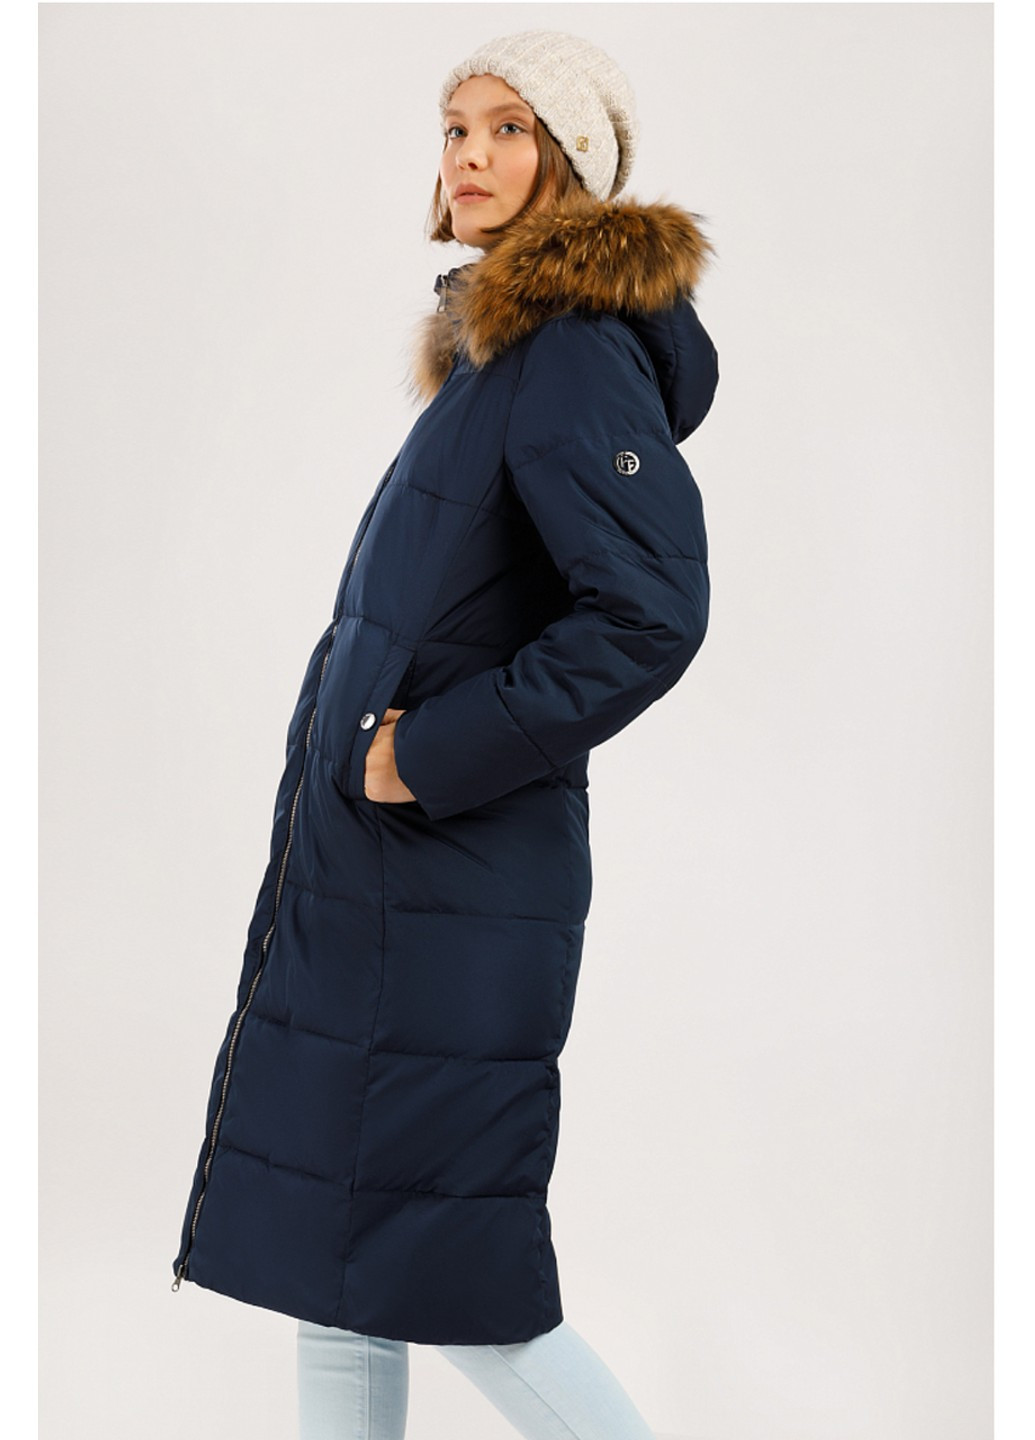 Темно-синяя зимняя зимняя куртка с мехом w19-11007-101 Finn Flare